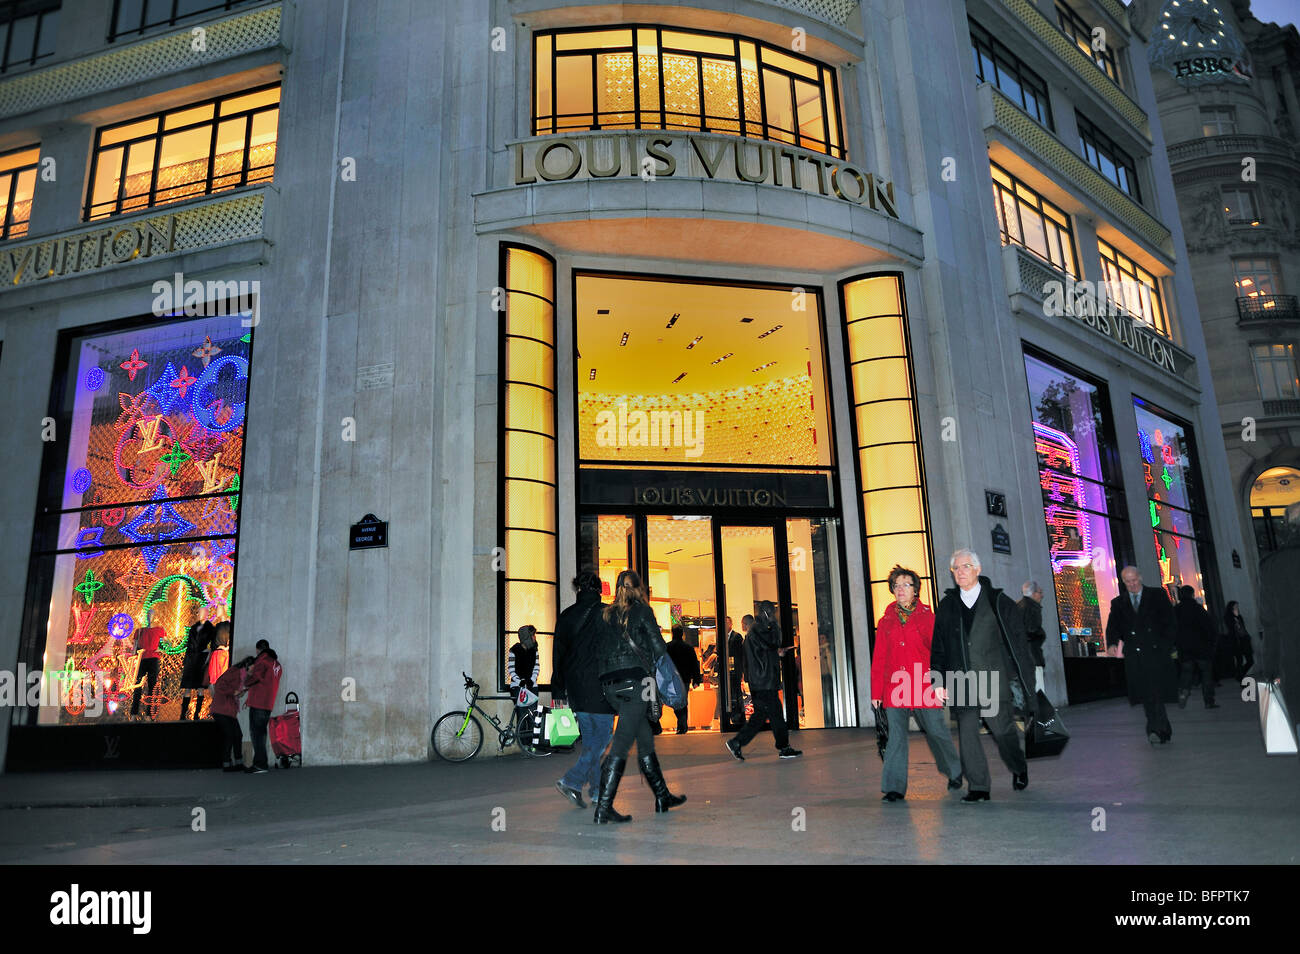 París, Francia - 8 De Julio De, 2015: Entrada A La Tienda De Moda De Lujo Louis  Vuitton En Los Campos Elíseos, En El Centro De París, Francia Fotos,  retratos, imágenes y